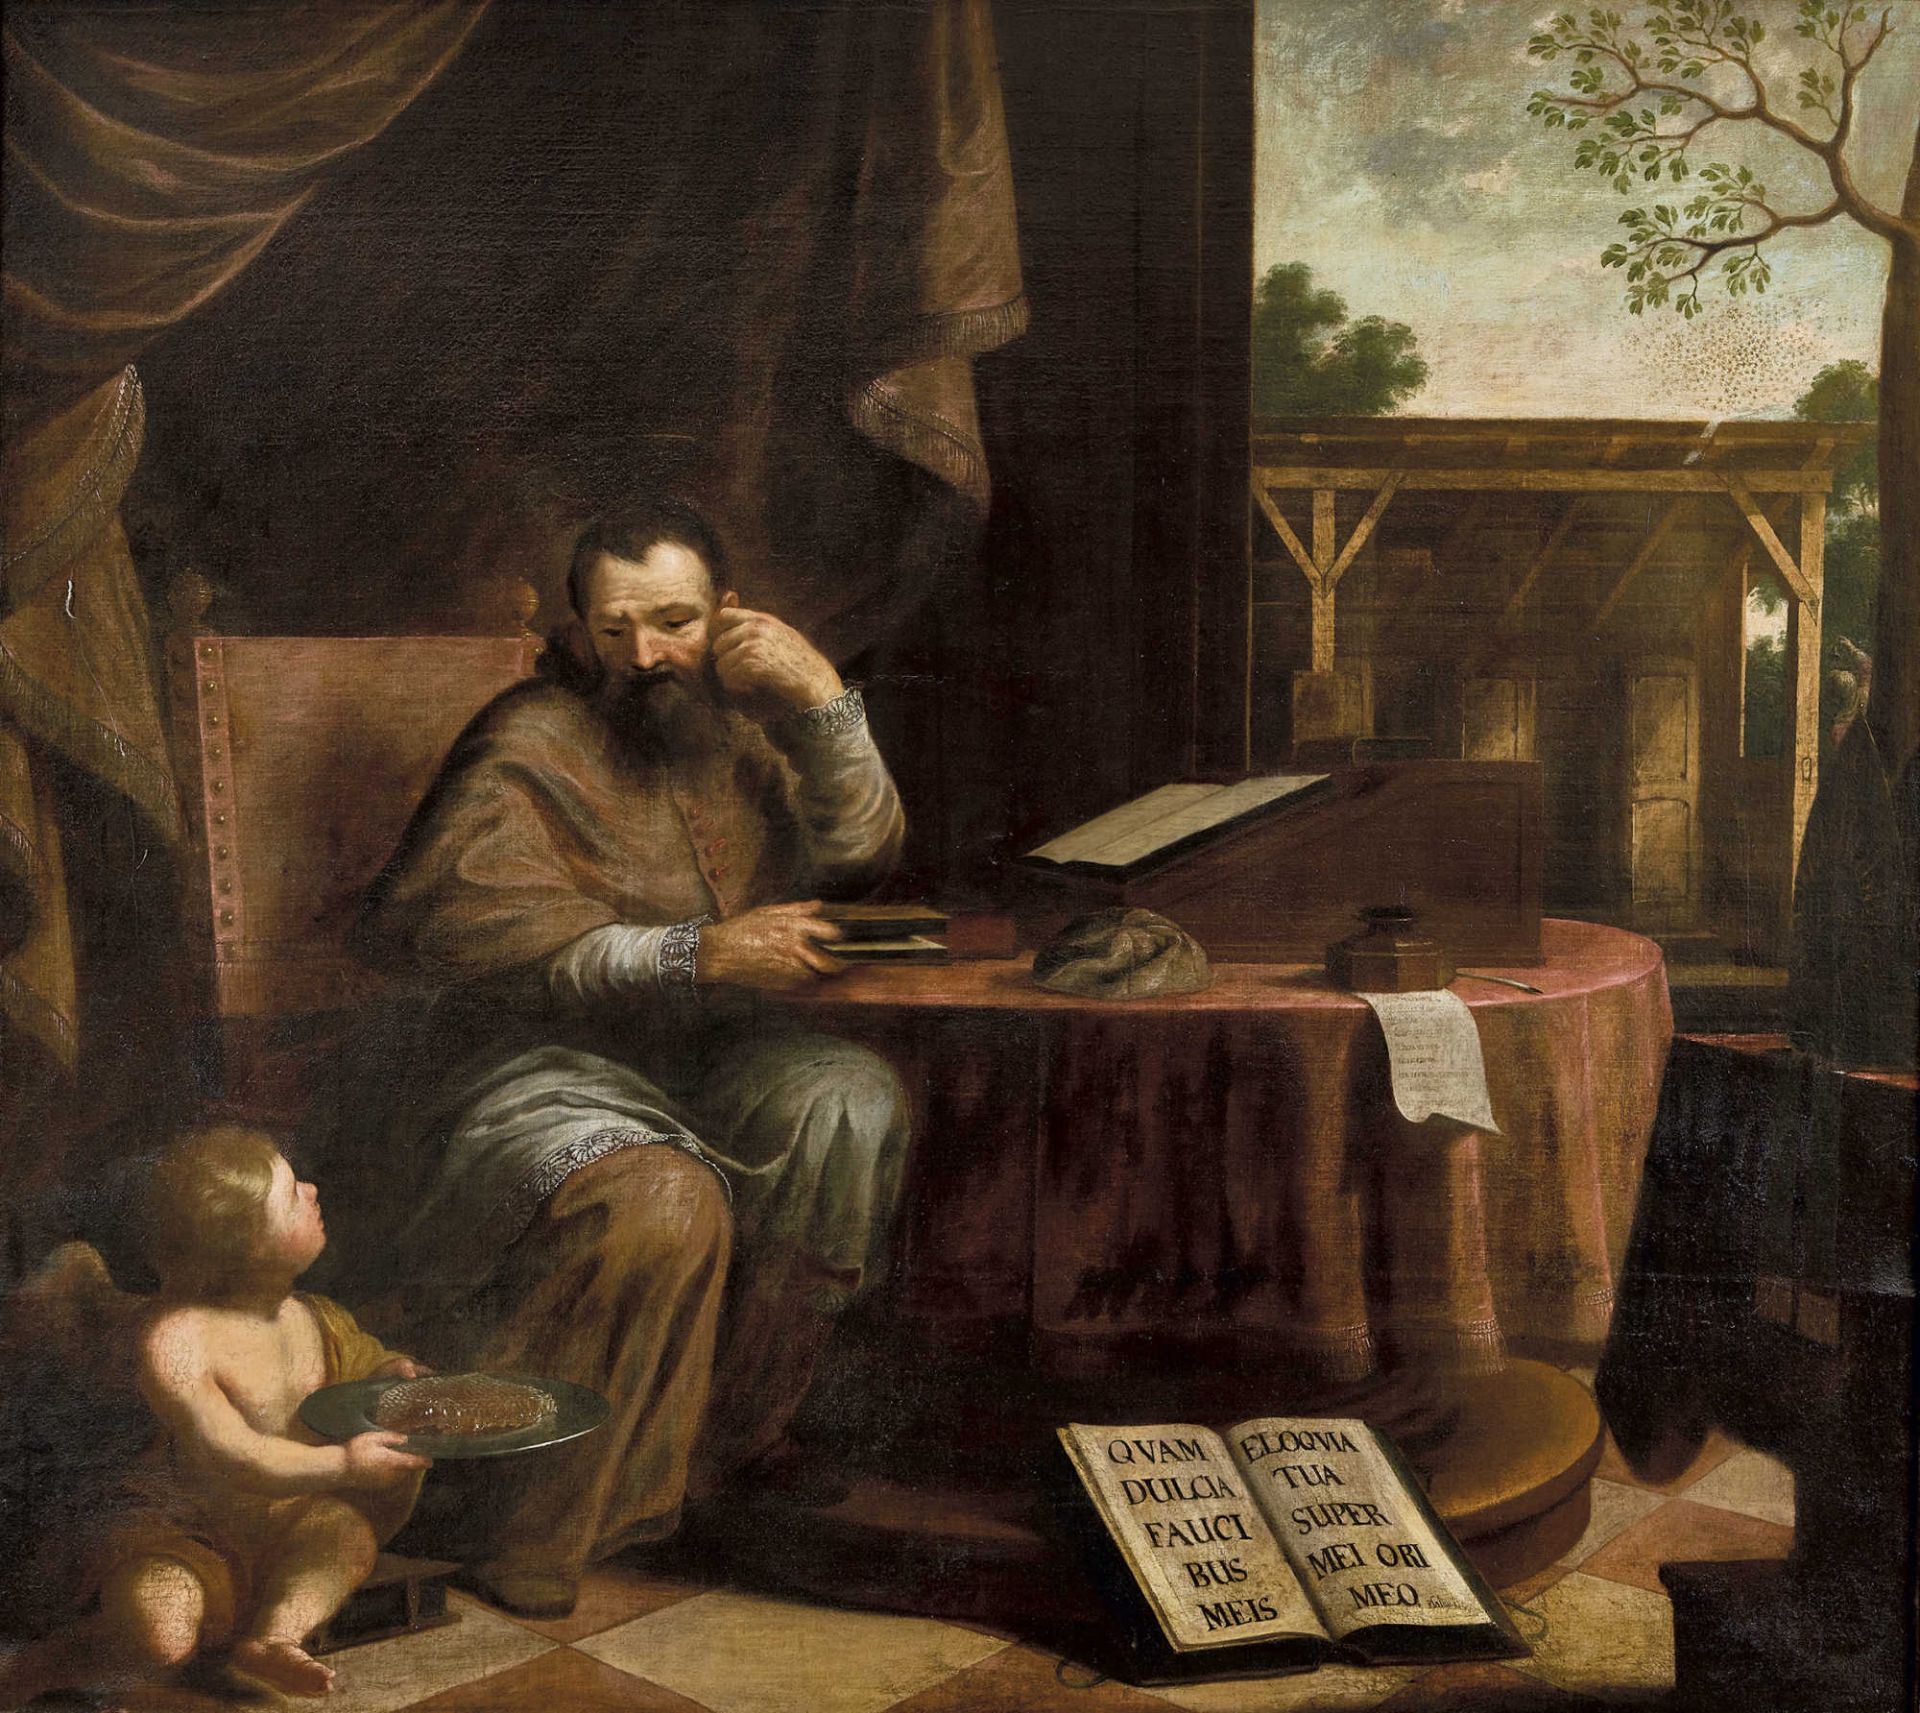 ITALIEN, 17. JH.Der Heilige Augustinus.Öl auf Leinwand, doubliert,148,5x167,5 cm- - -22.00 % buyer's